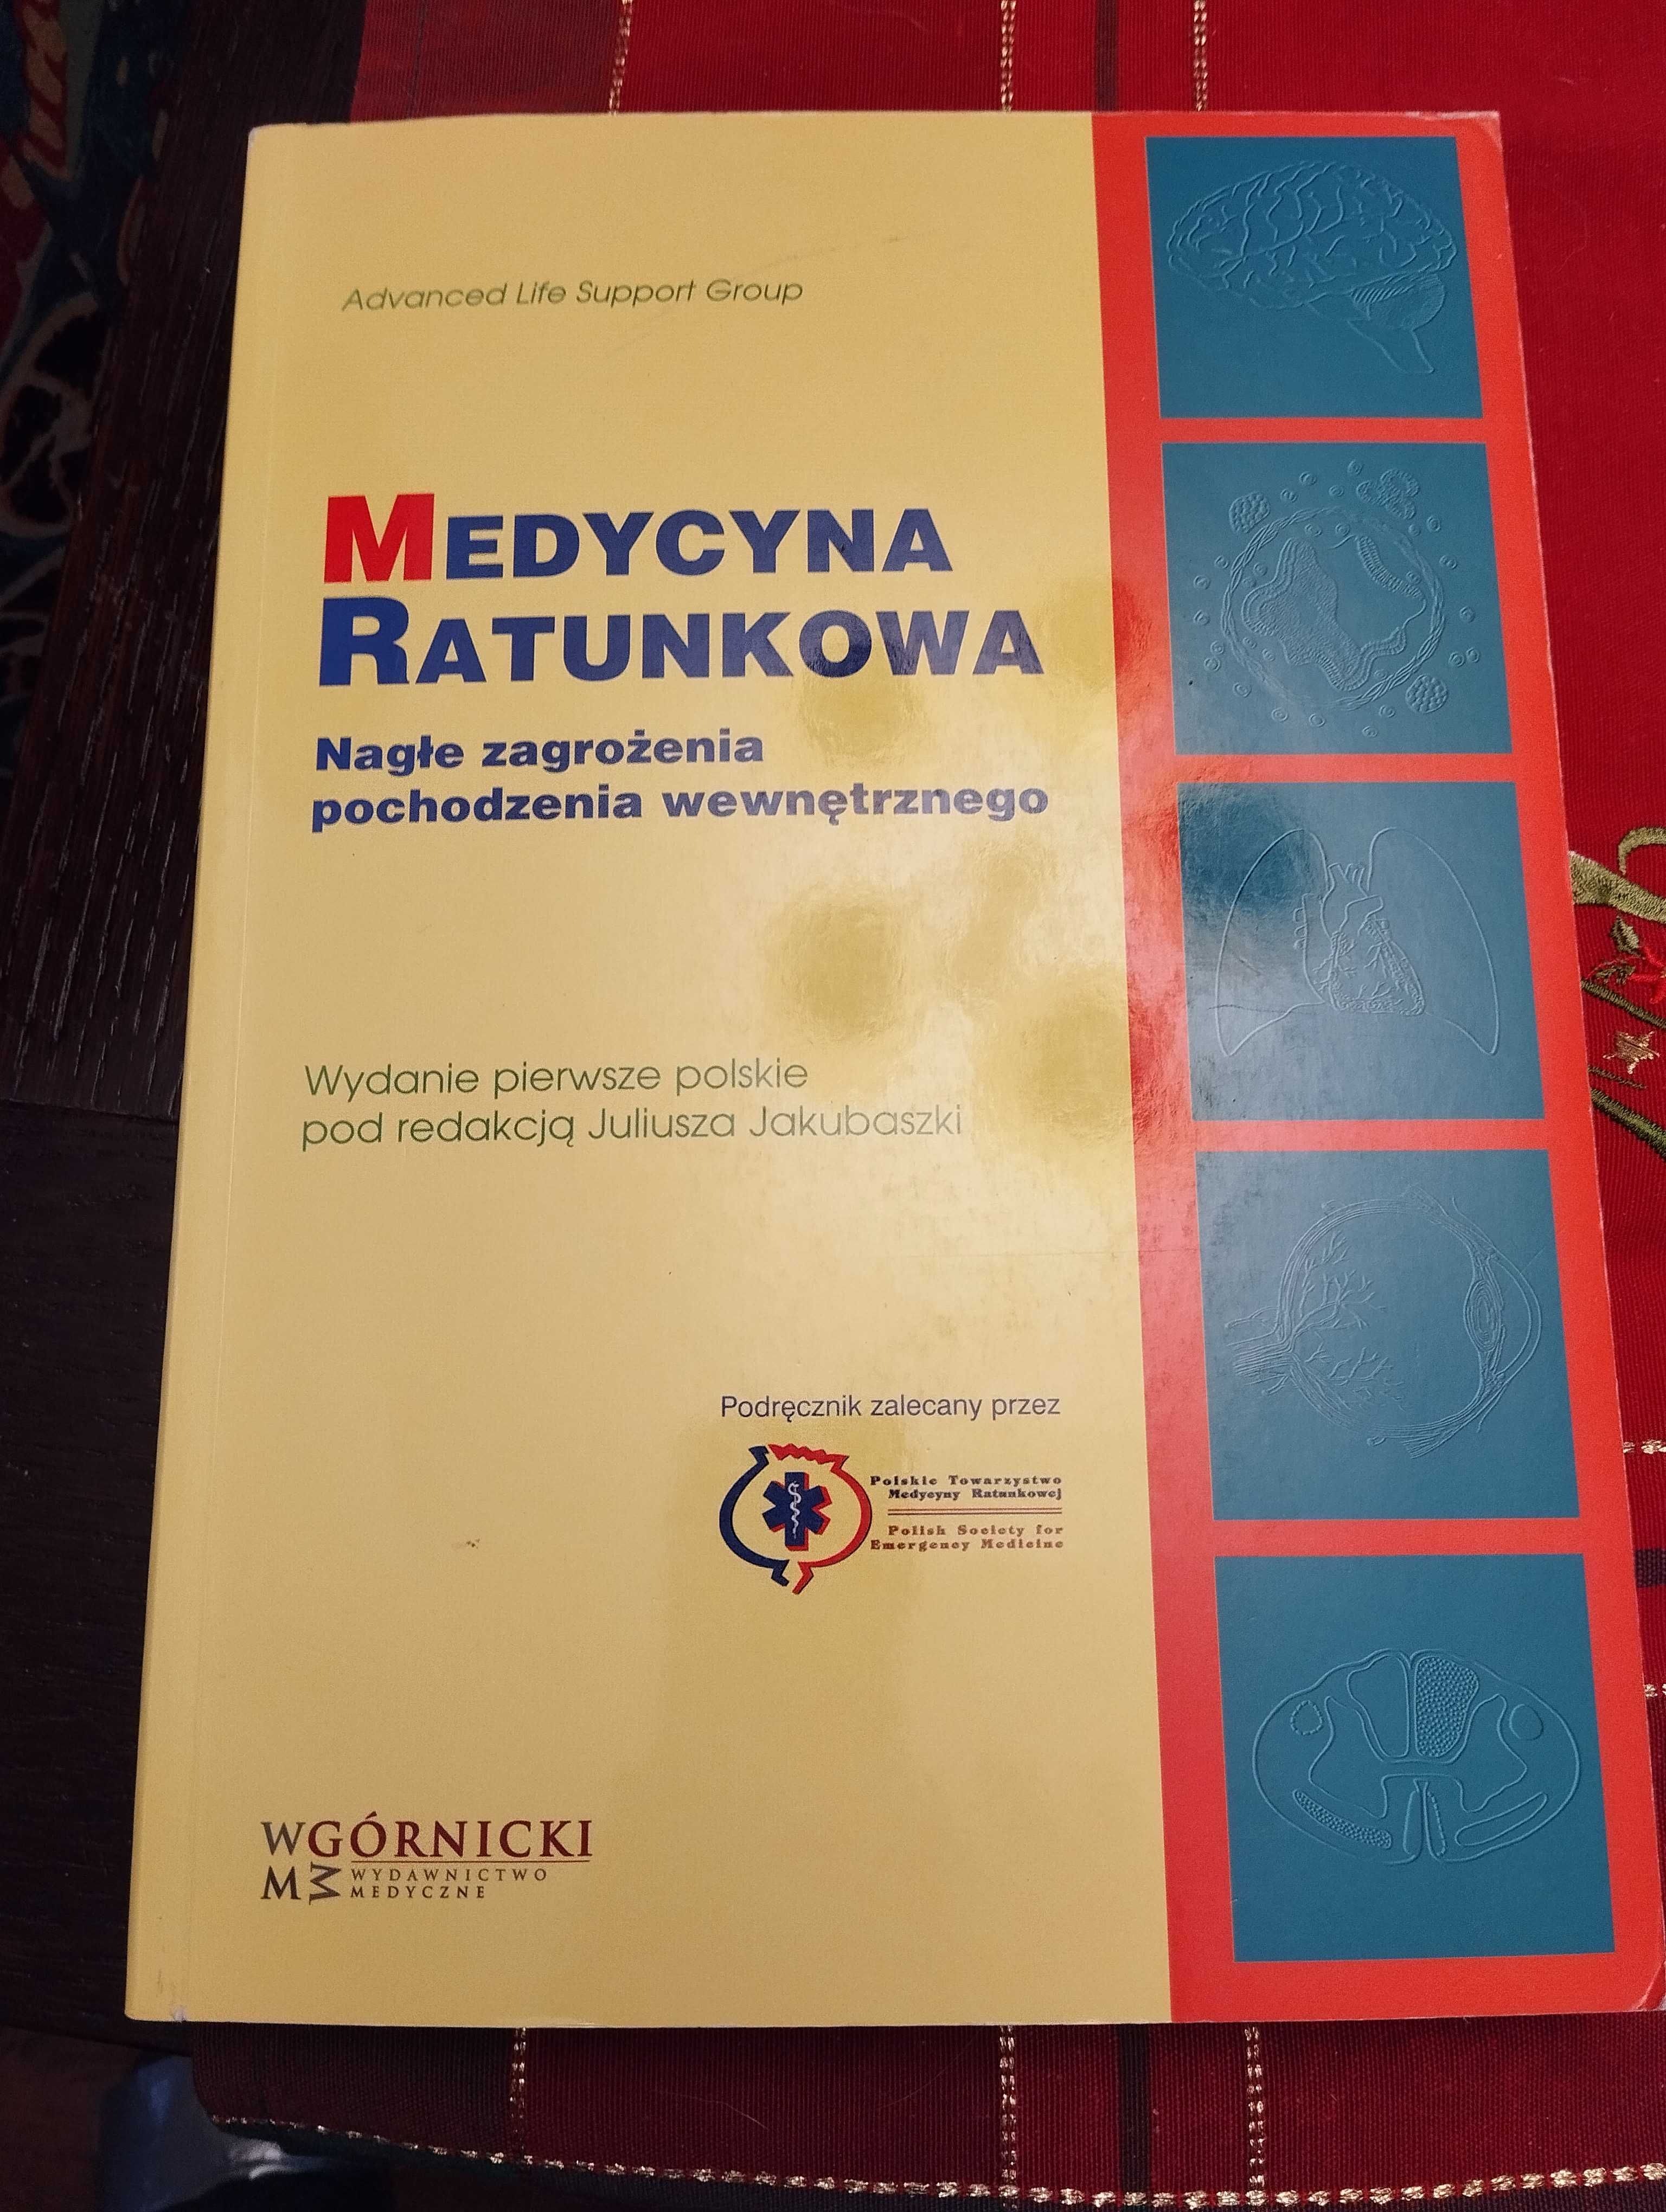 Medycyna Ratunkowa